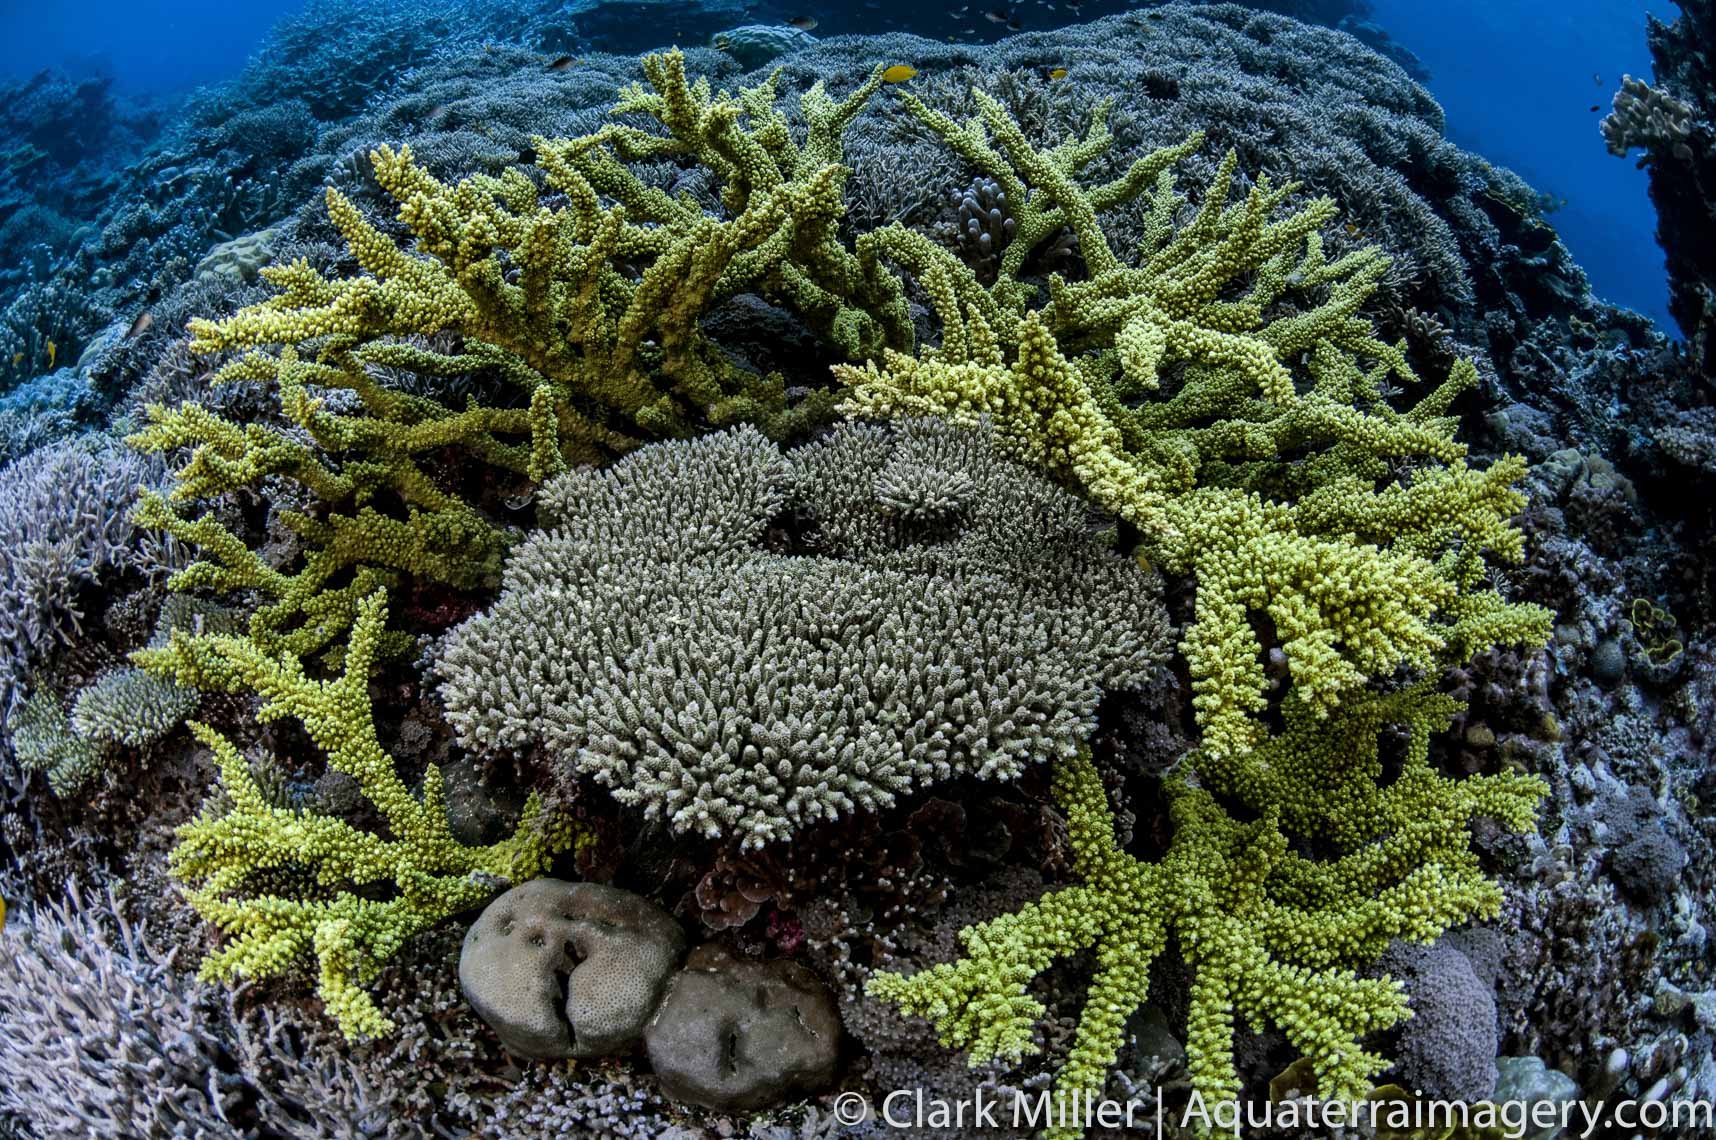  Soloman Islands Underwater 014 2 website